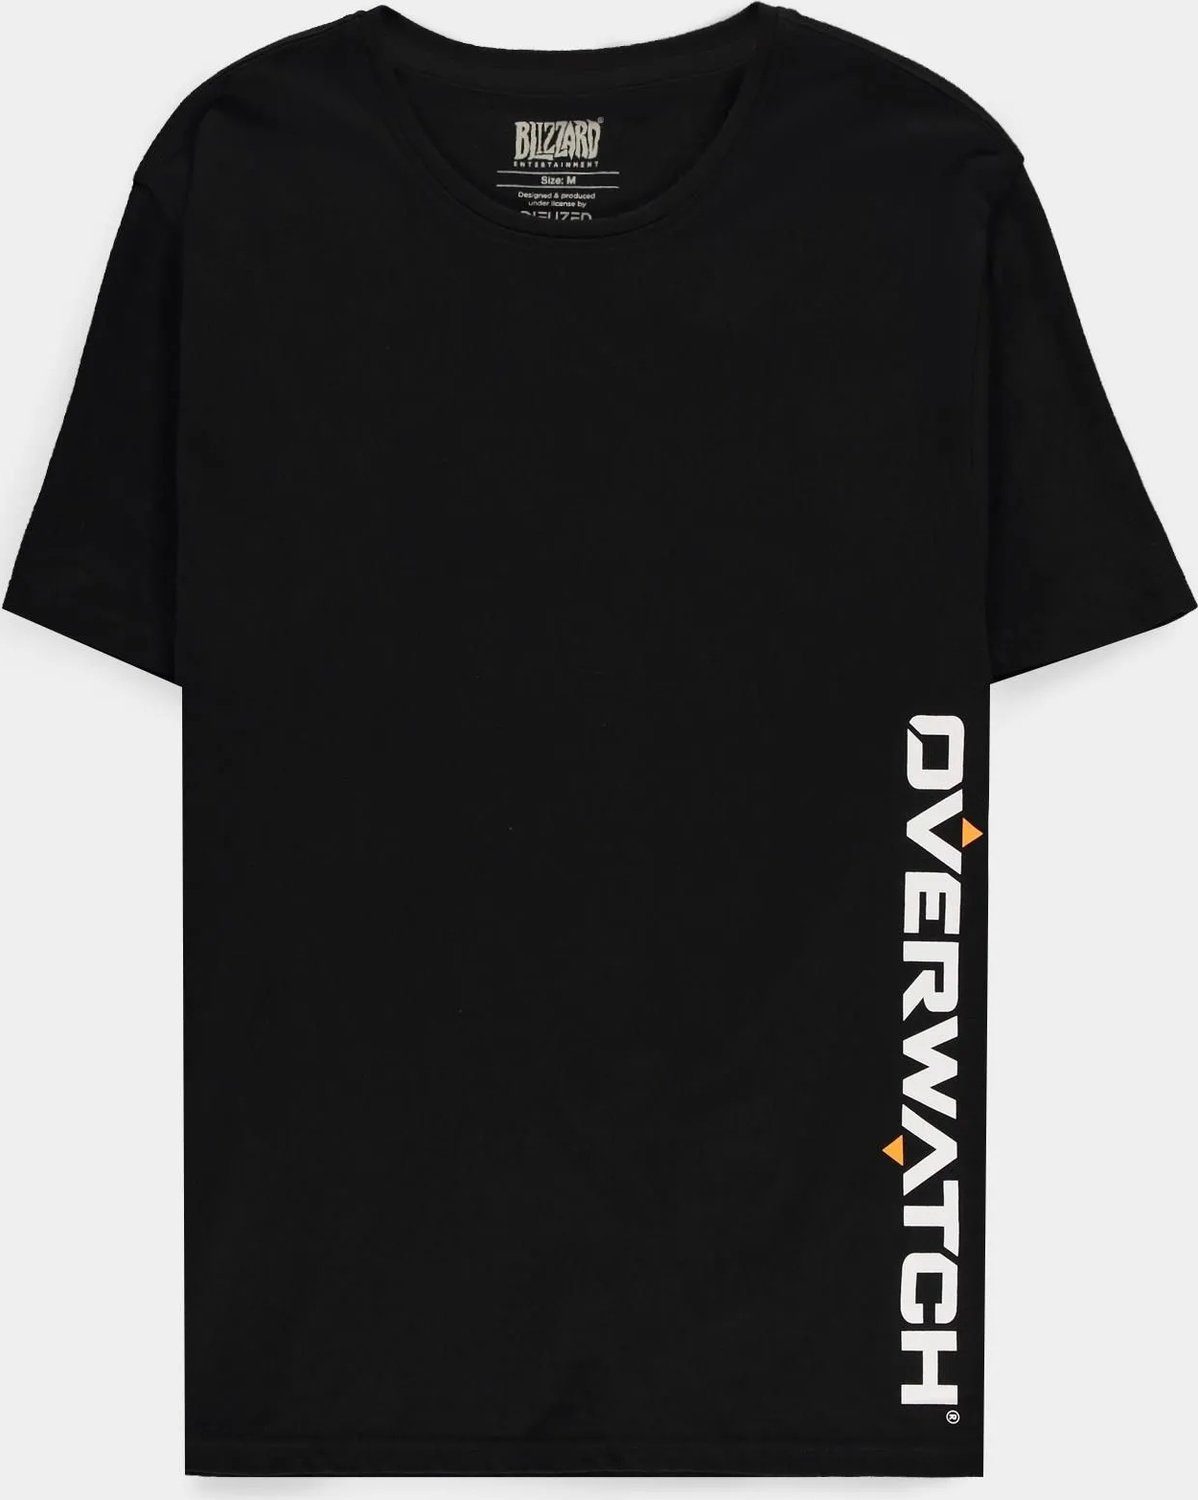 Overwatch Weiß T-Shirt